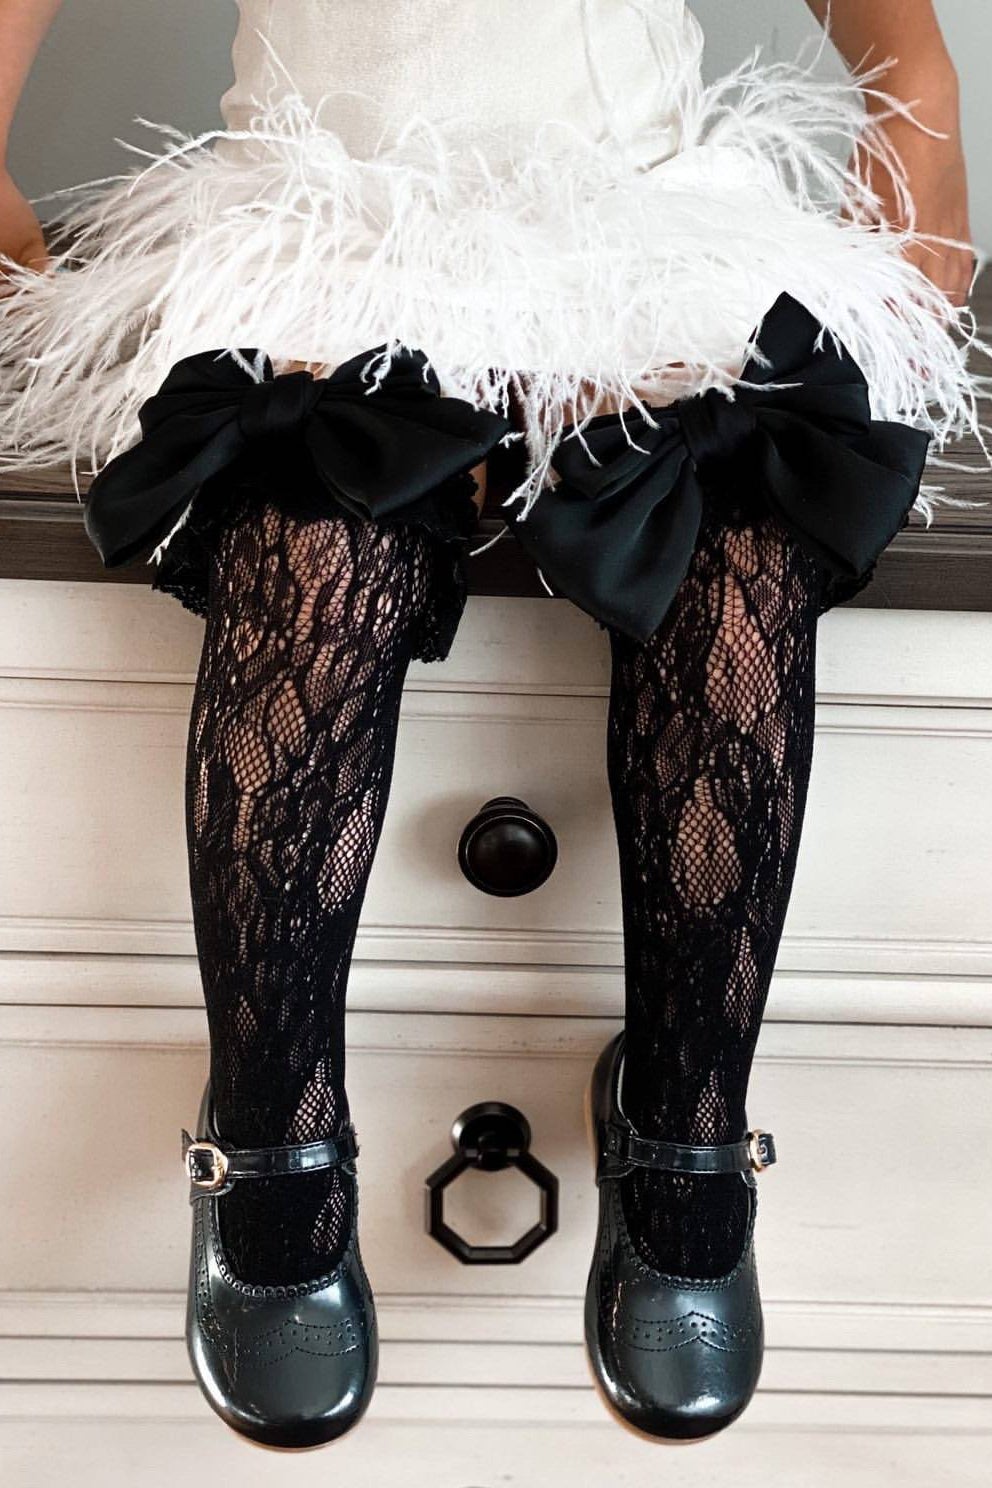 Petit Maison "Lola" Black Lace Satin Bow Socks | Millie and John